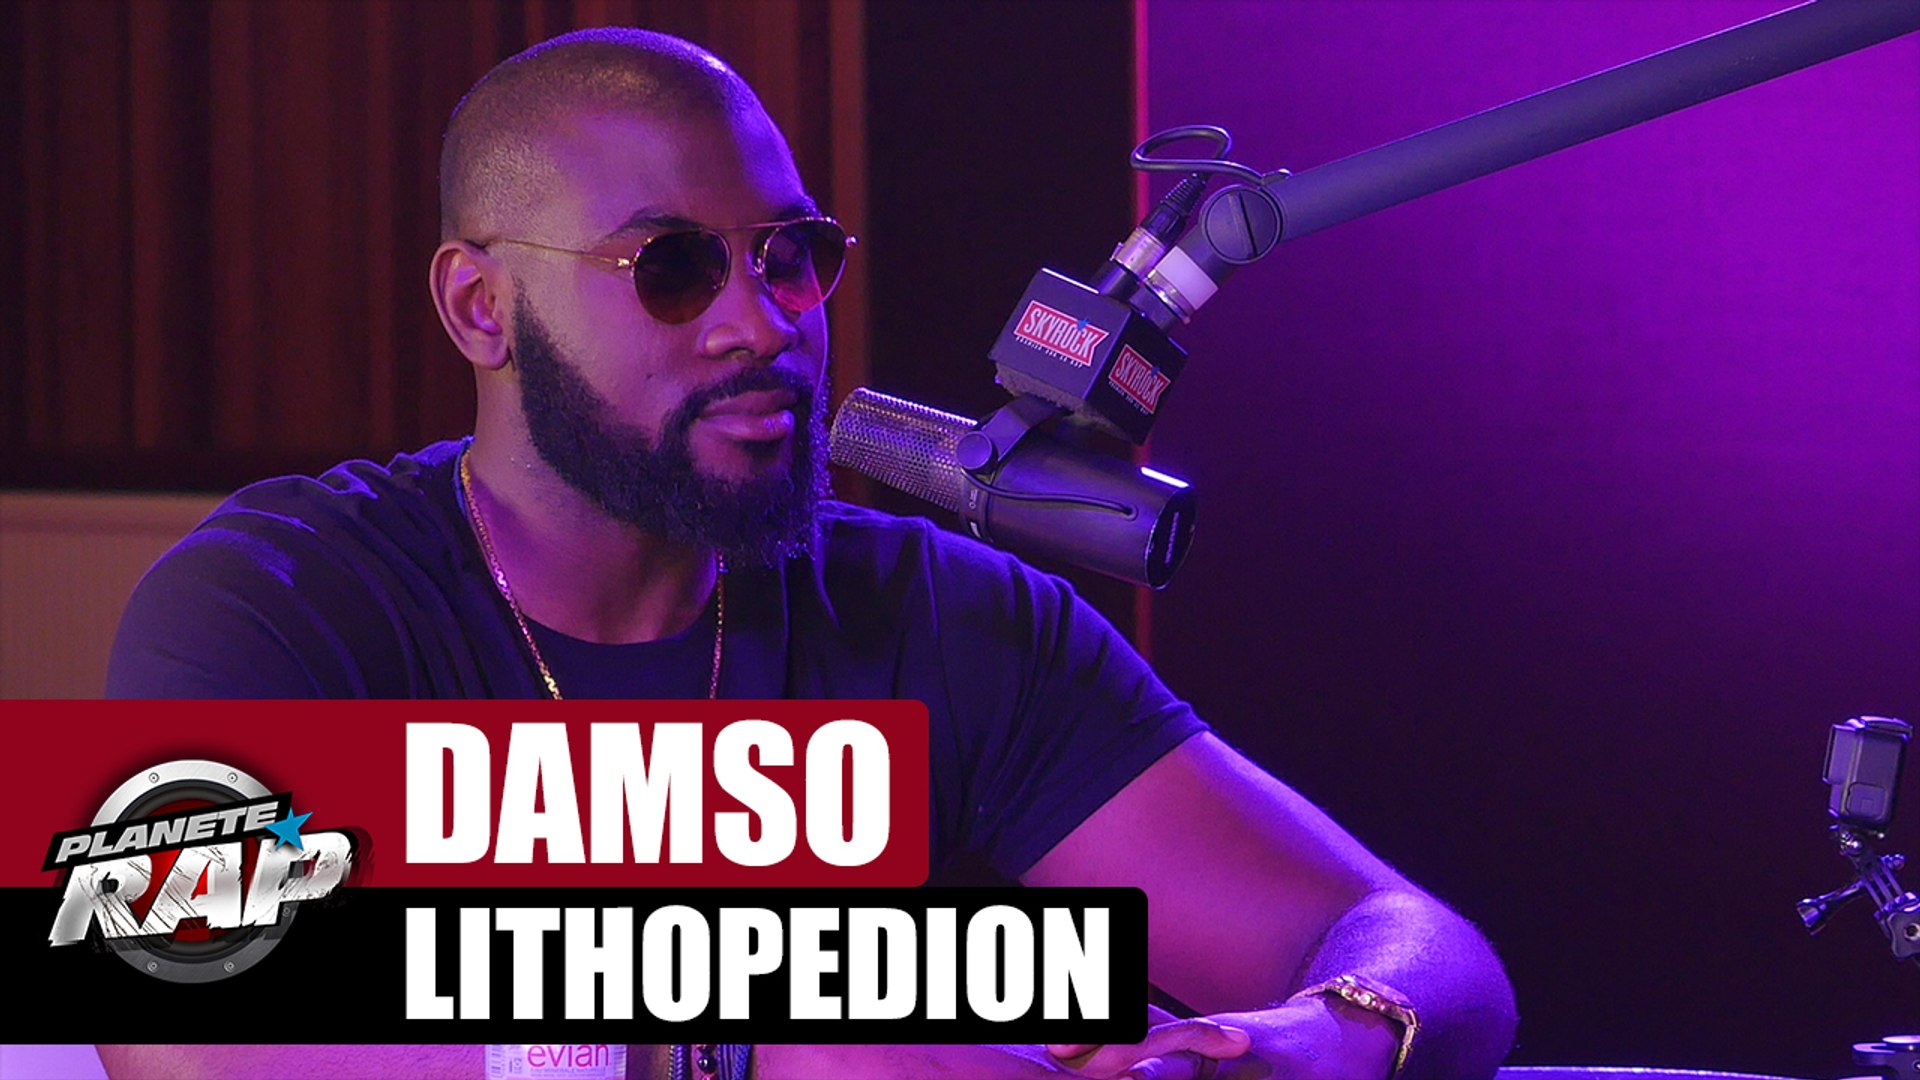 Planète Rap Damso "Lithopédion" - Vidéo Dailymotion